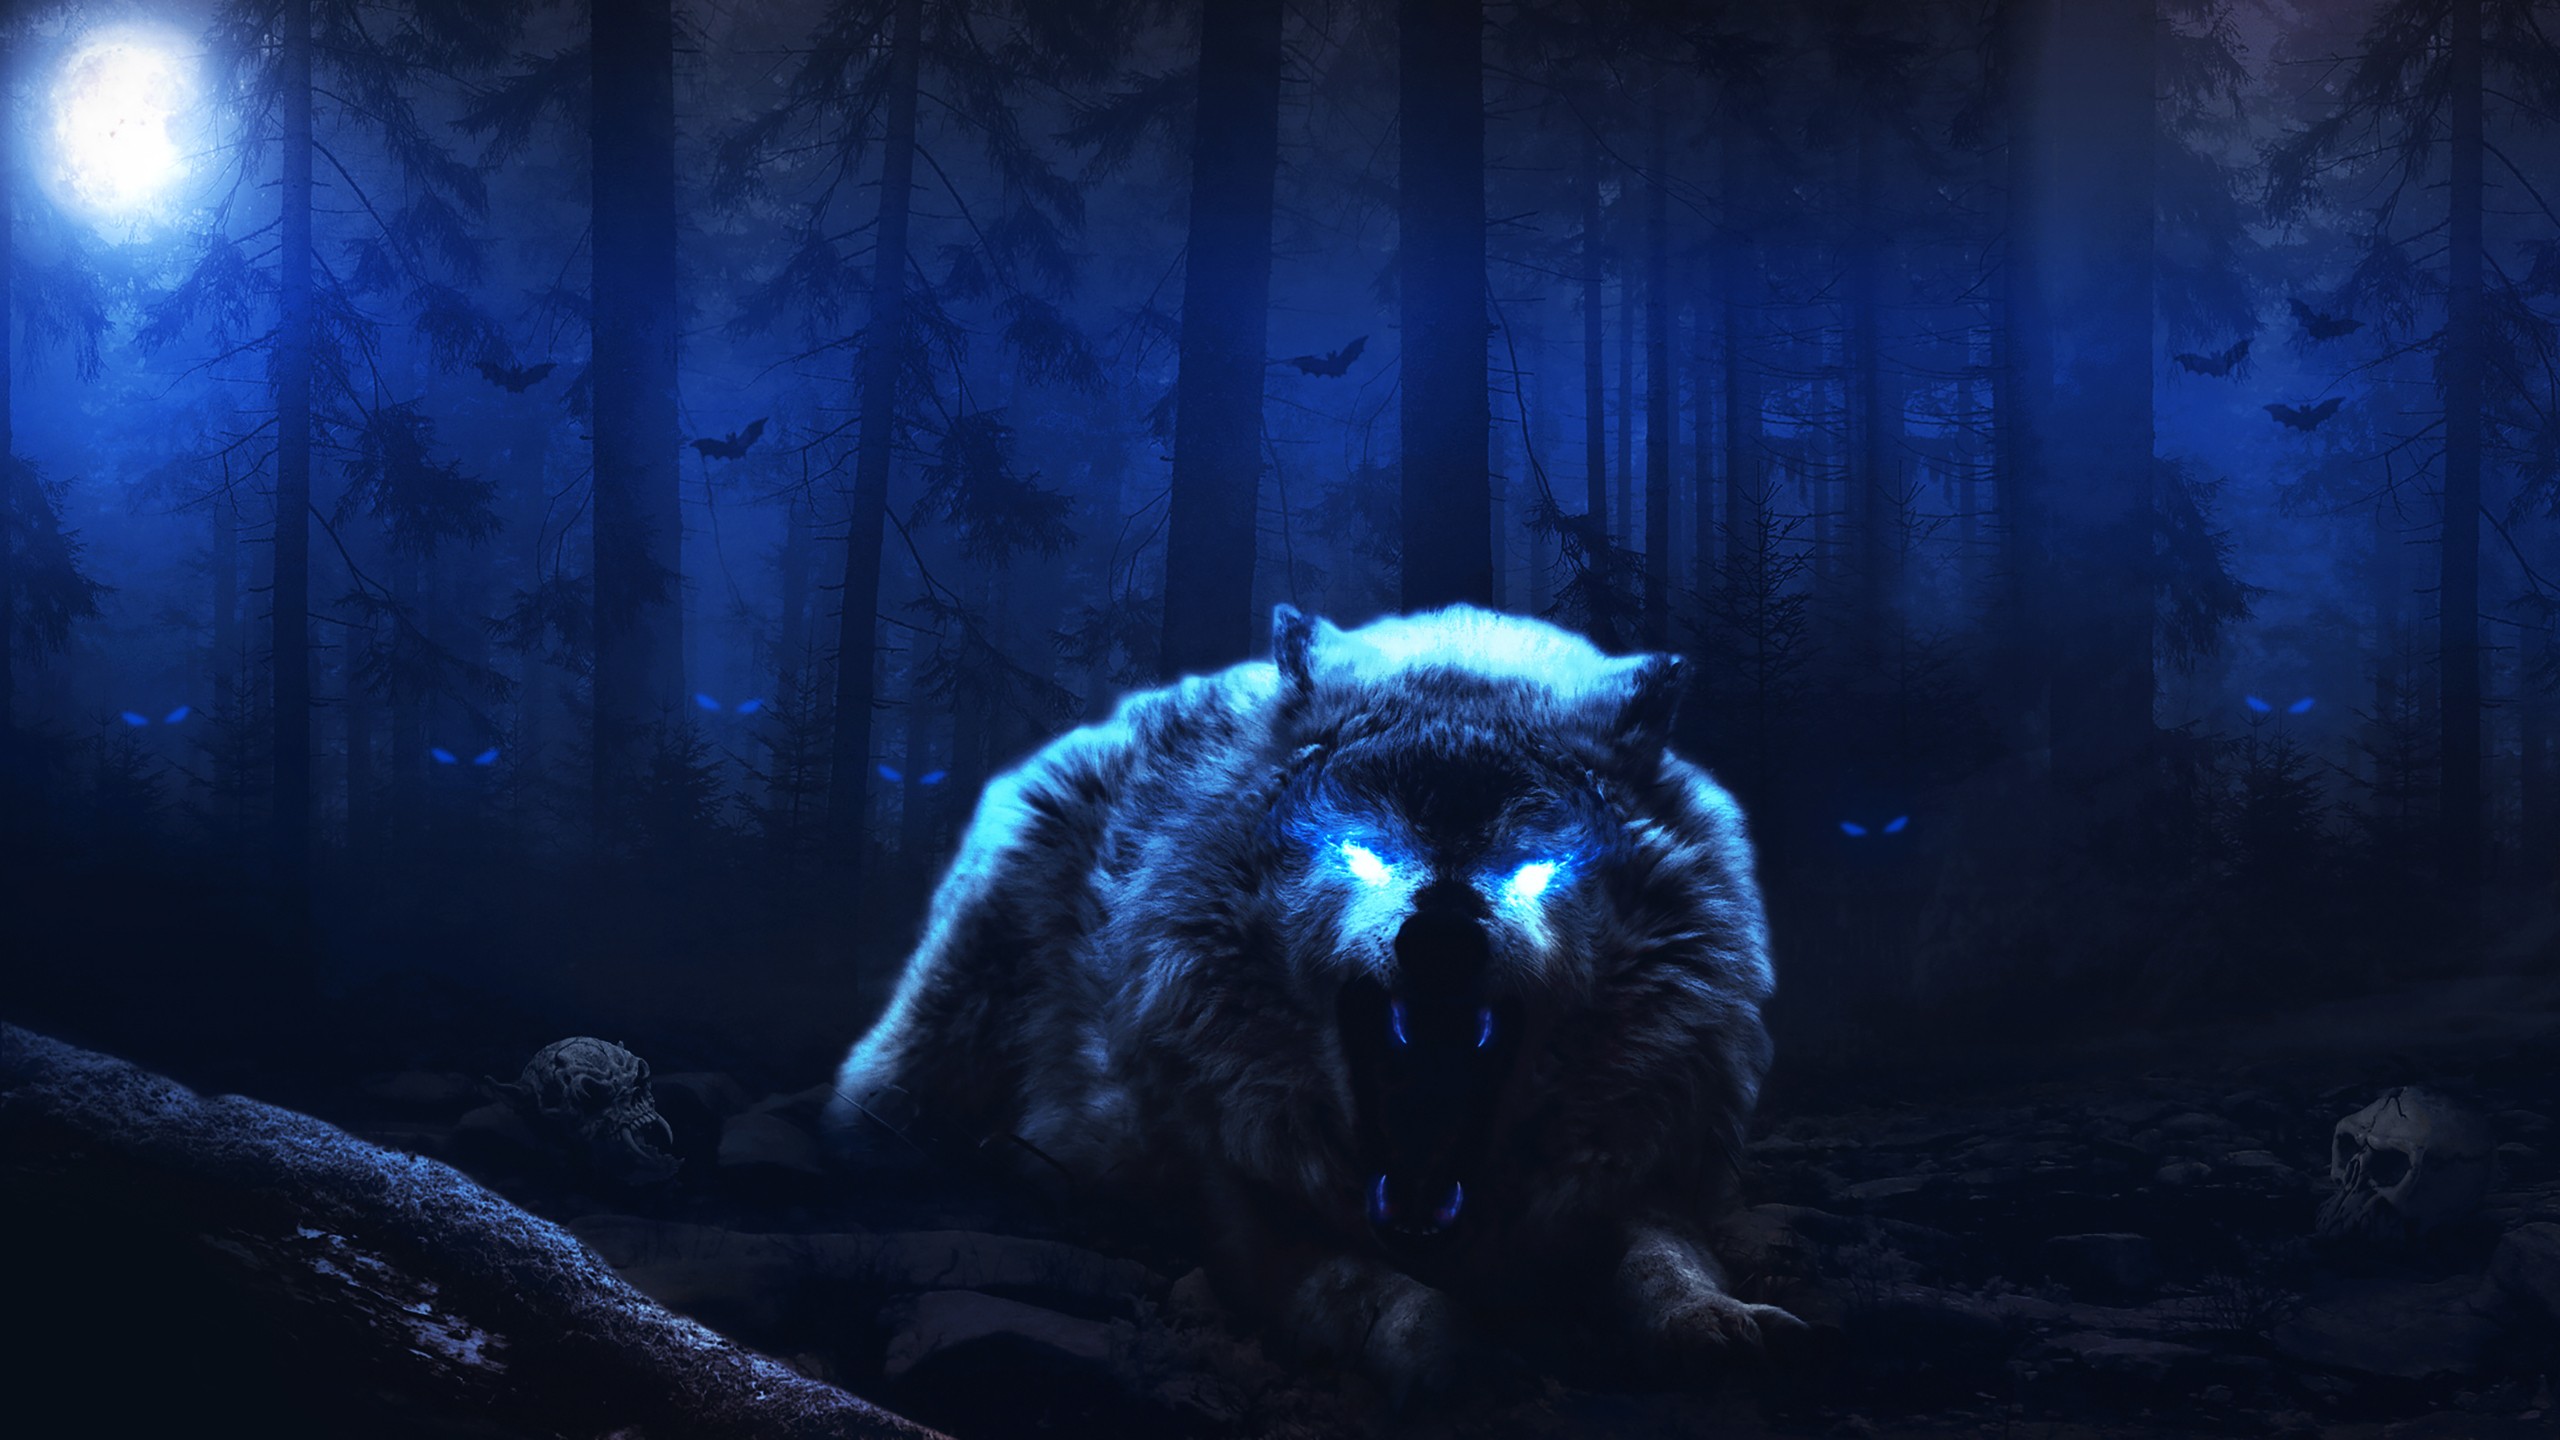 General 2560x1440 wolf fantasy art dark Moon glowing eyes animals artwork mammals creature blue night